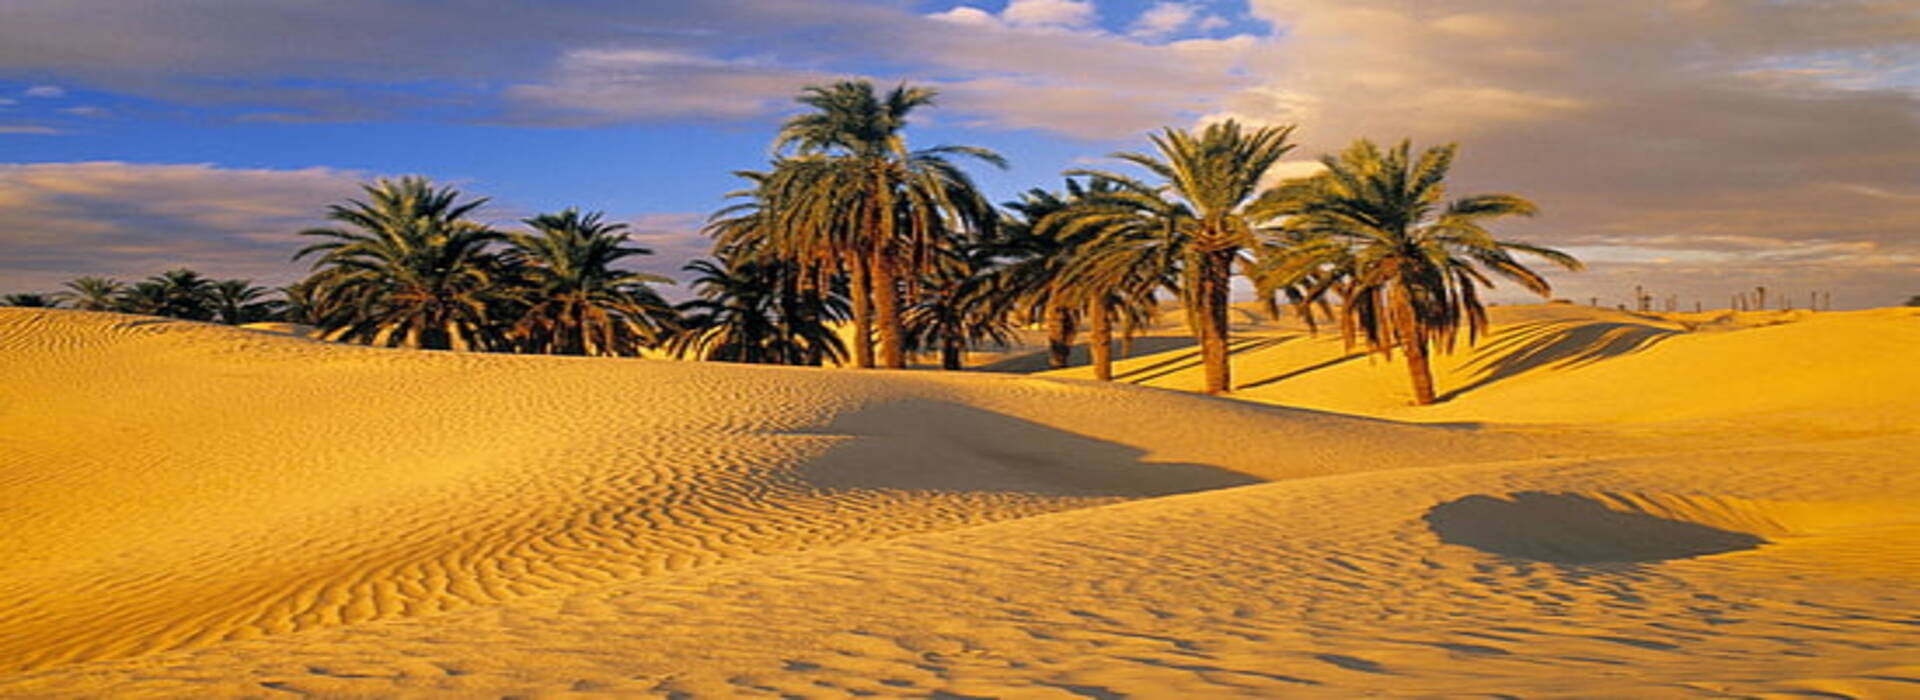 4 Days From Marrakech To Merzouga Sahara Desert Tour